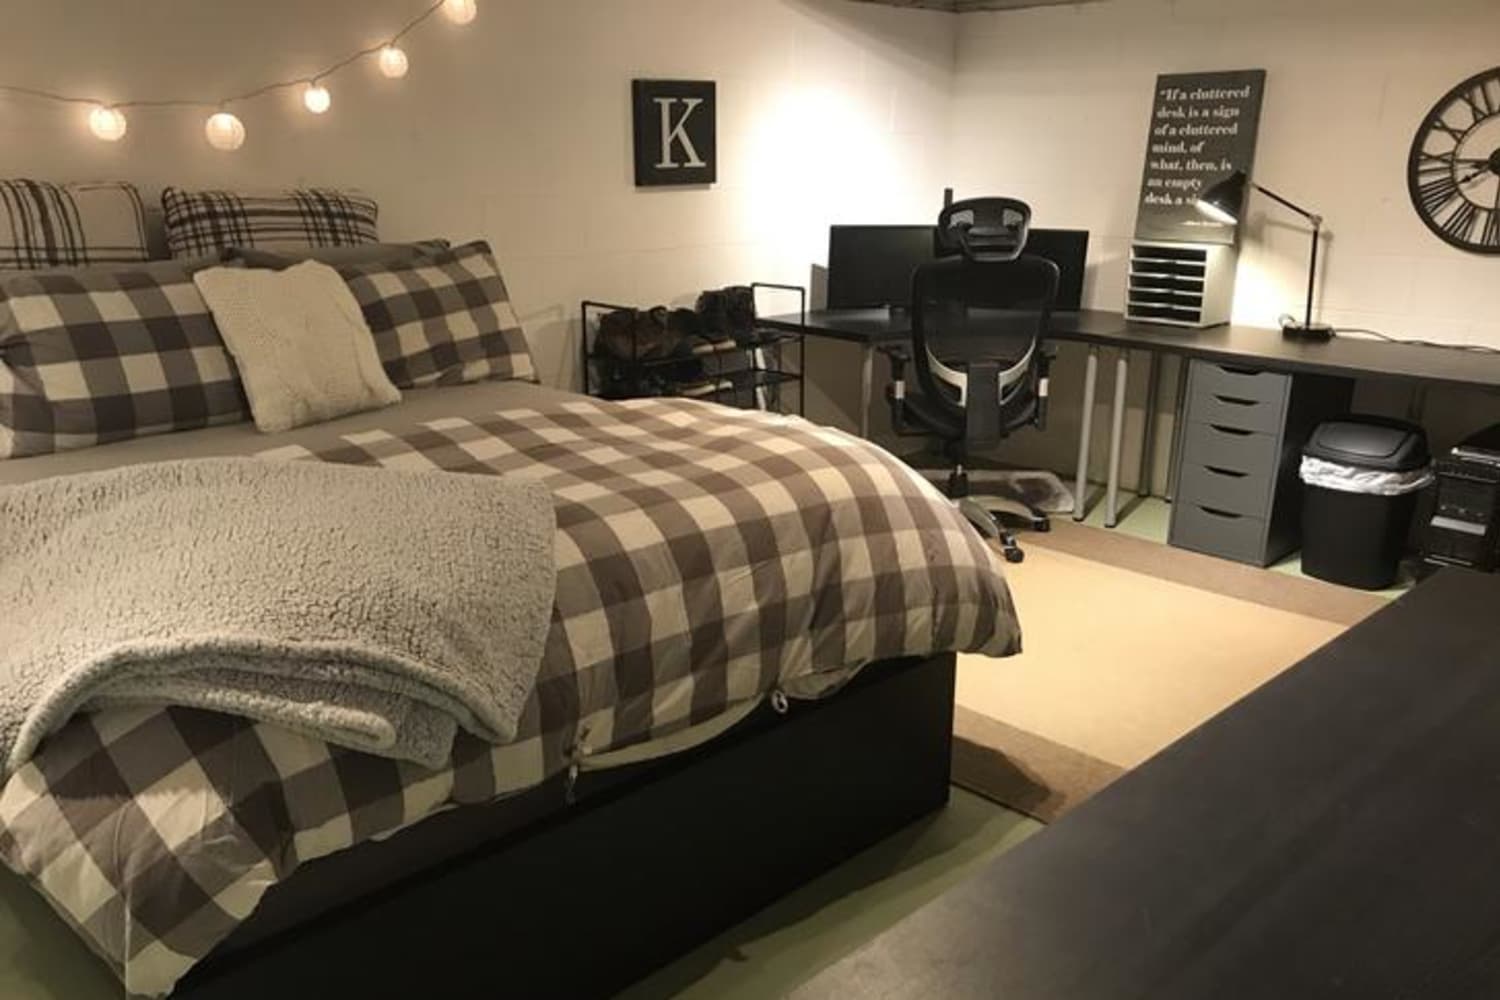 Bedroom goals : r/CozyPlaces